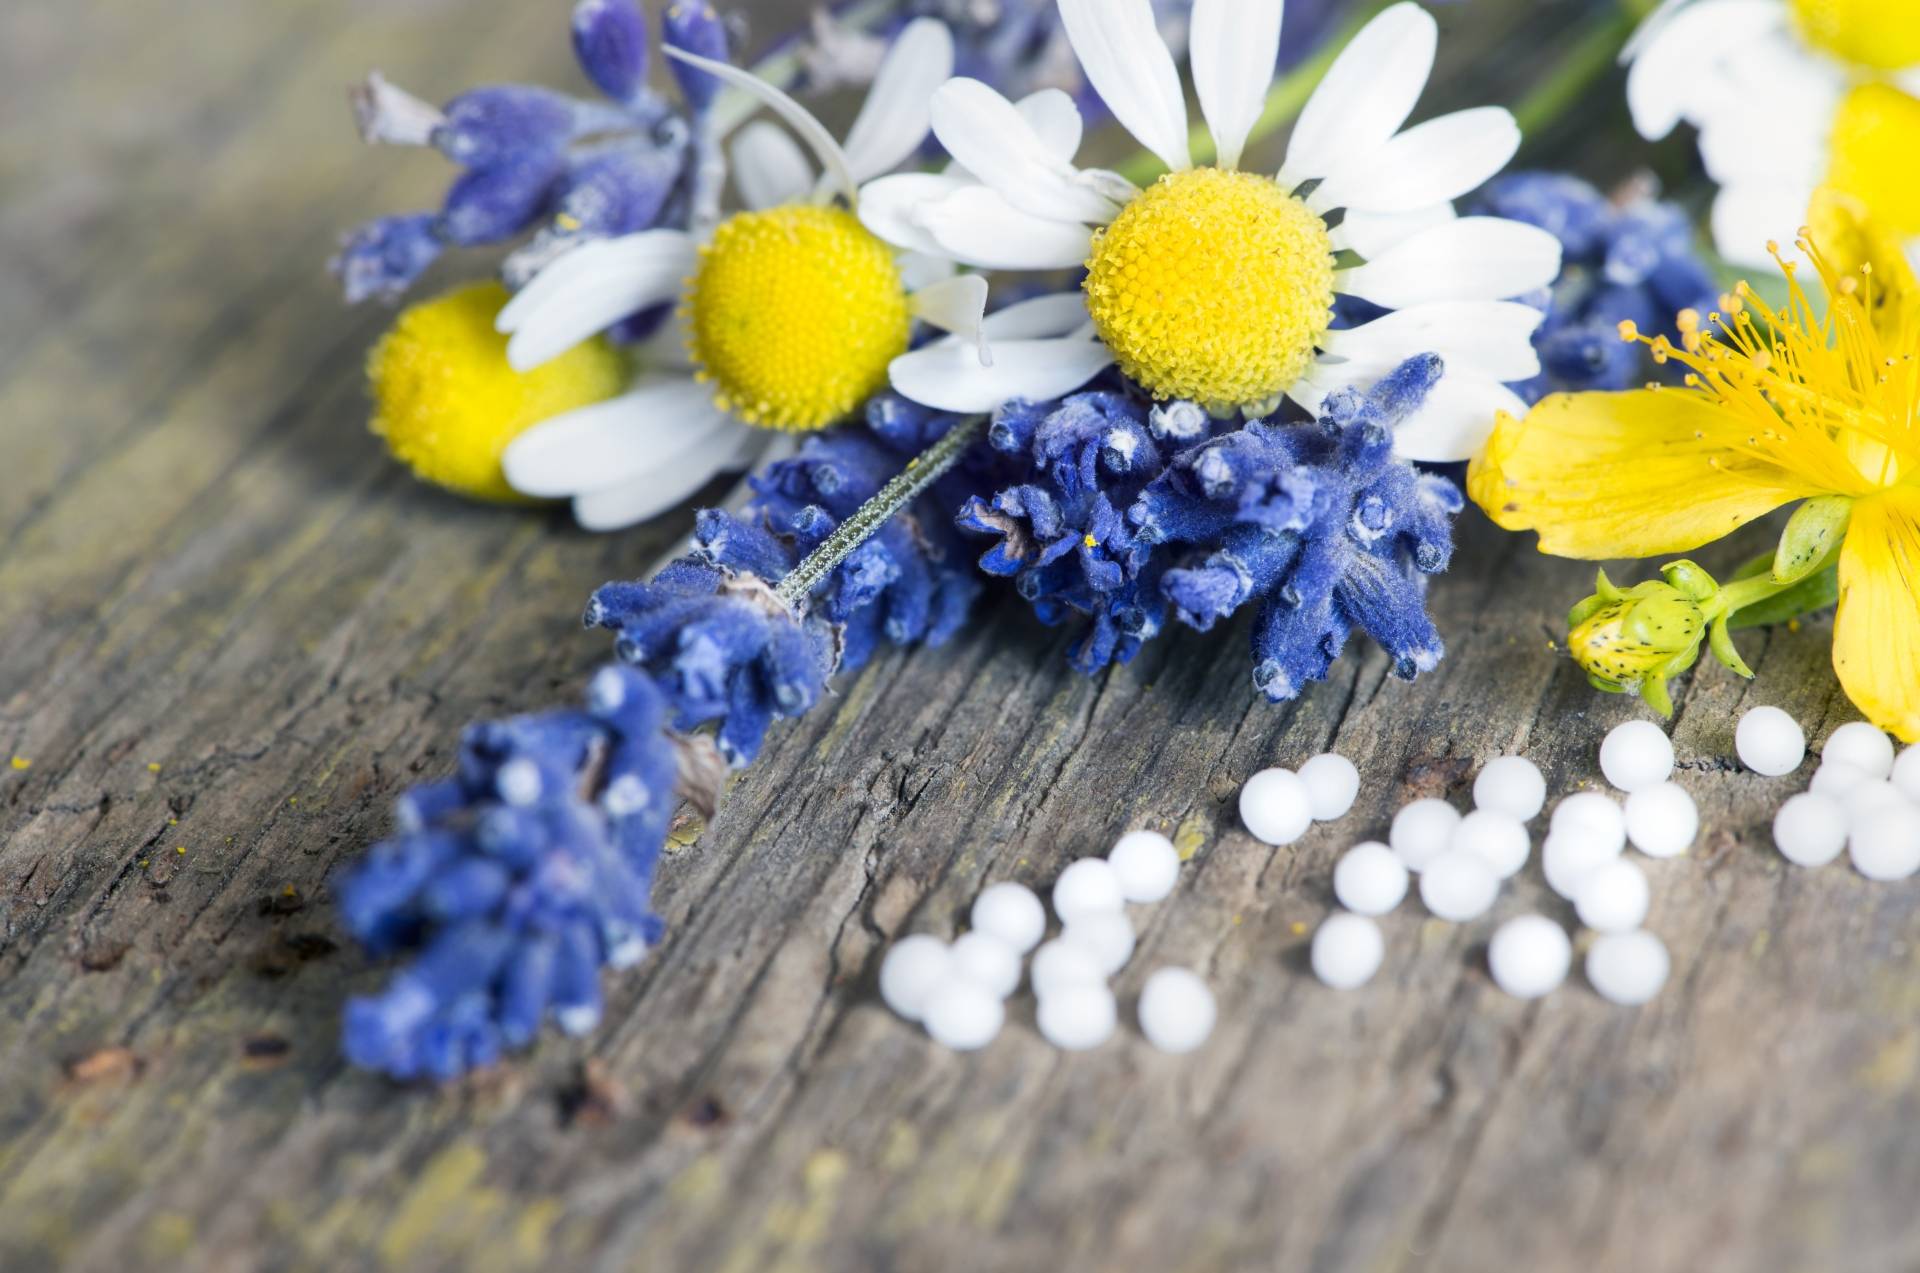 Leki homeopatyczne na ból menstruacyjny i dolegliwości przy miesiączce. Granulki homeopatyczne leżą obok kwiató polnych na starym drewnianym blacie.